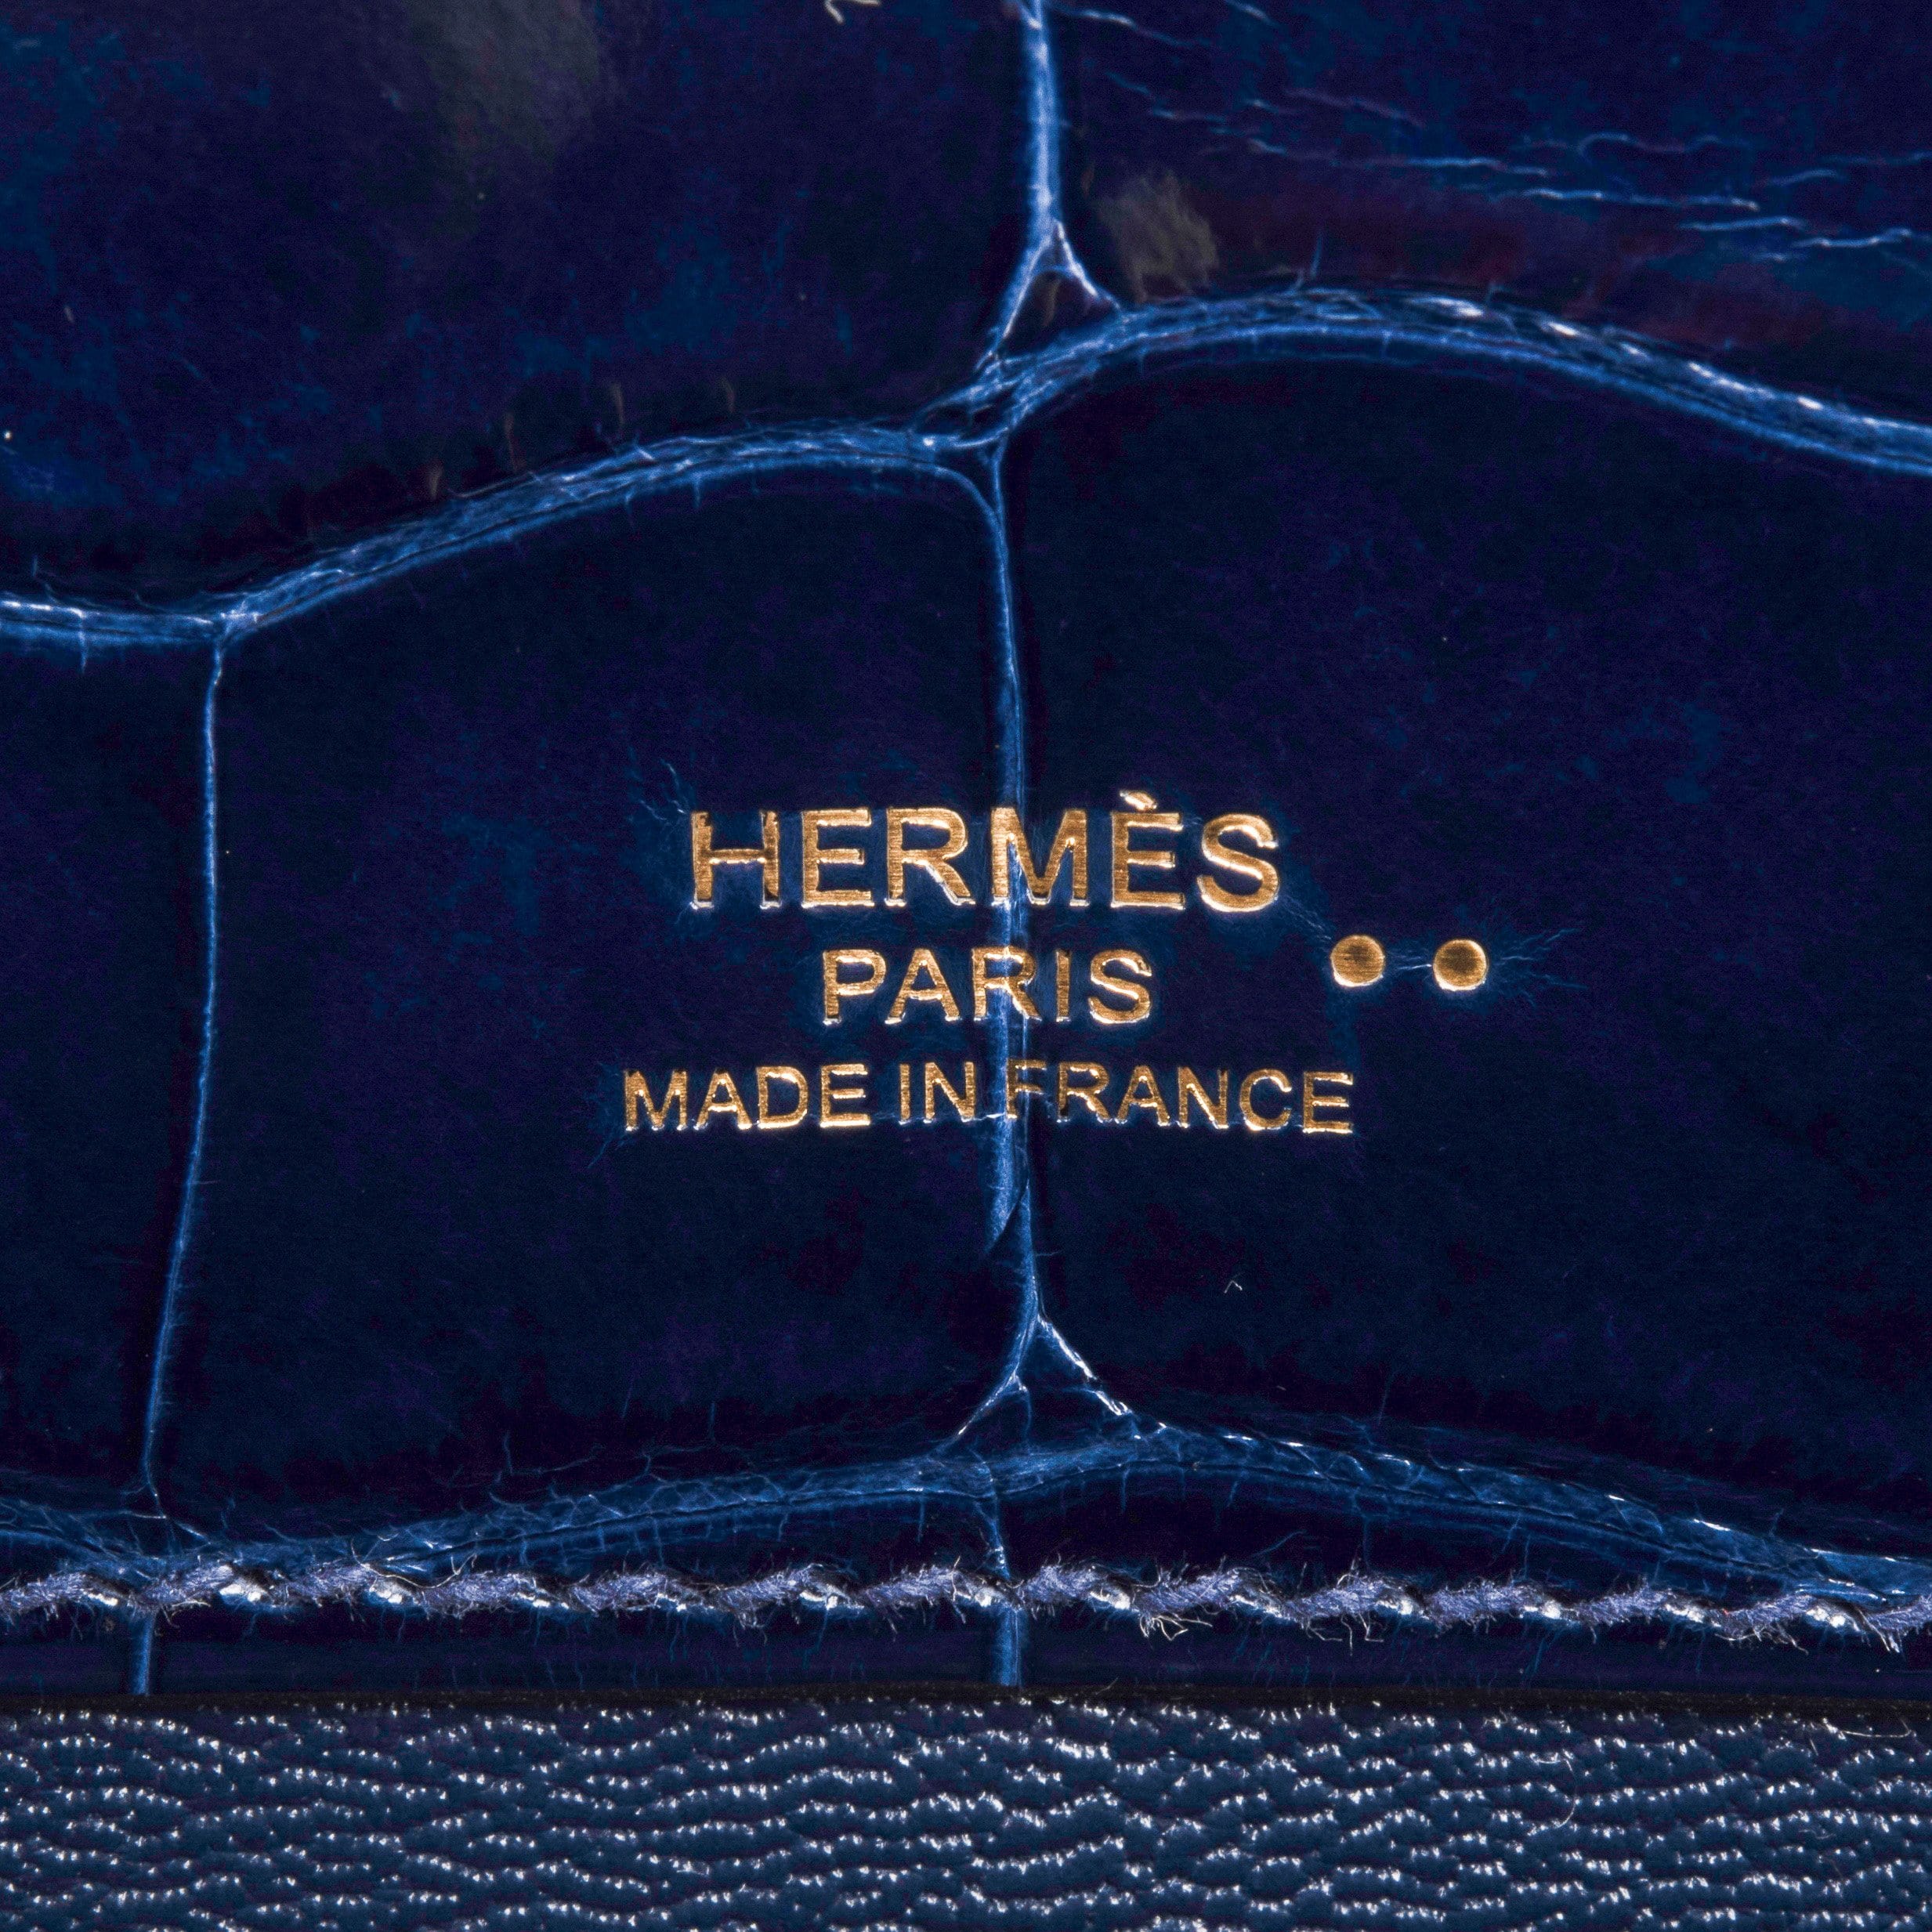 Hermes Kelly Cut Wallet Blue Sapphire Crocodile Gold Hardware